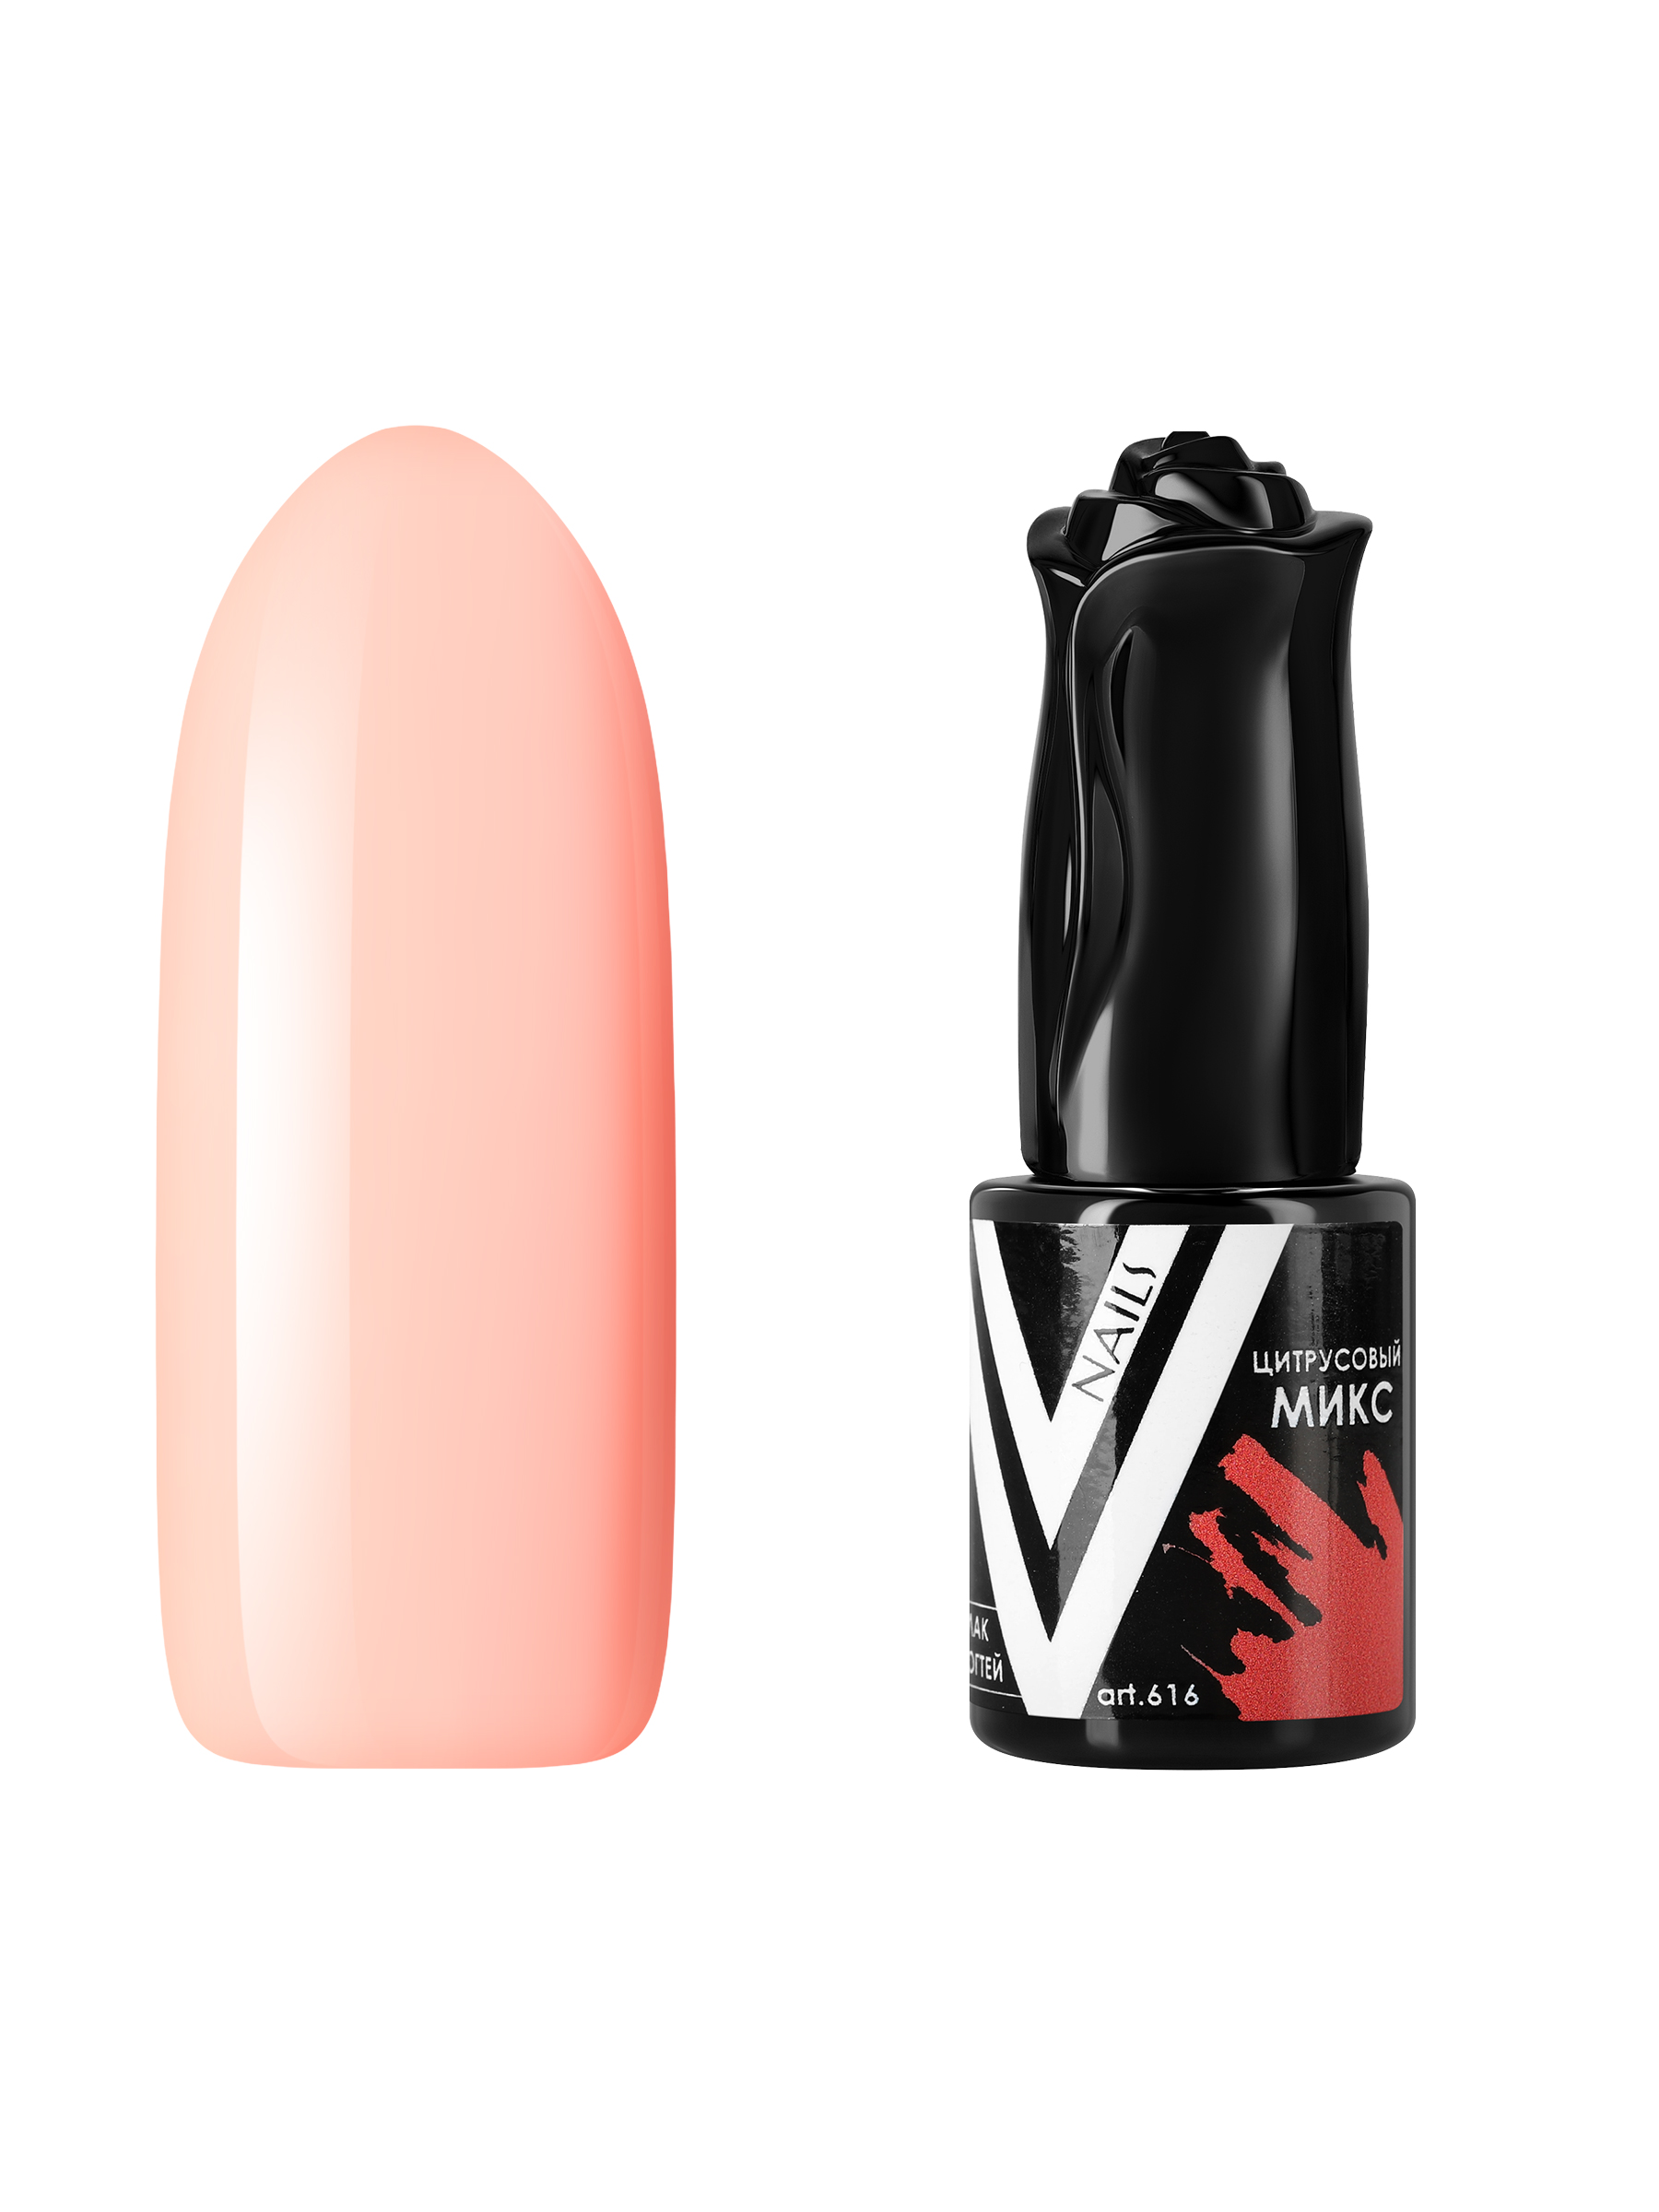 Гель-лак для ногтей Vogue Nails плотный, самовыравнивающийся, светлый, бежевый, 10 мл runail уф гель камуфлирующий французский бежевый 15 г